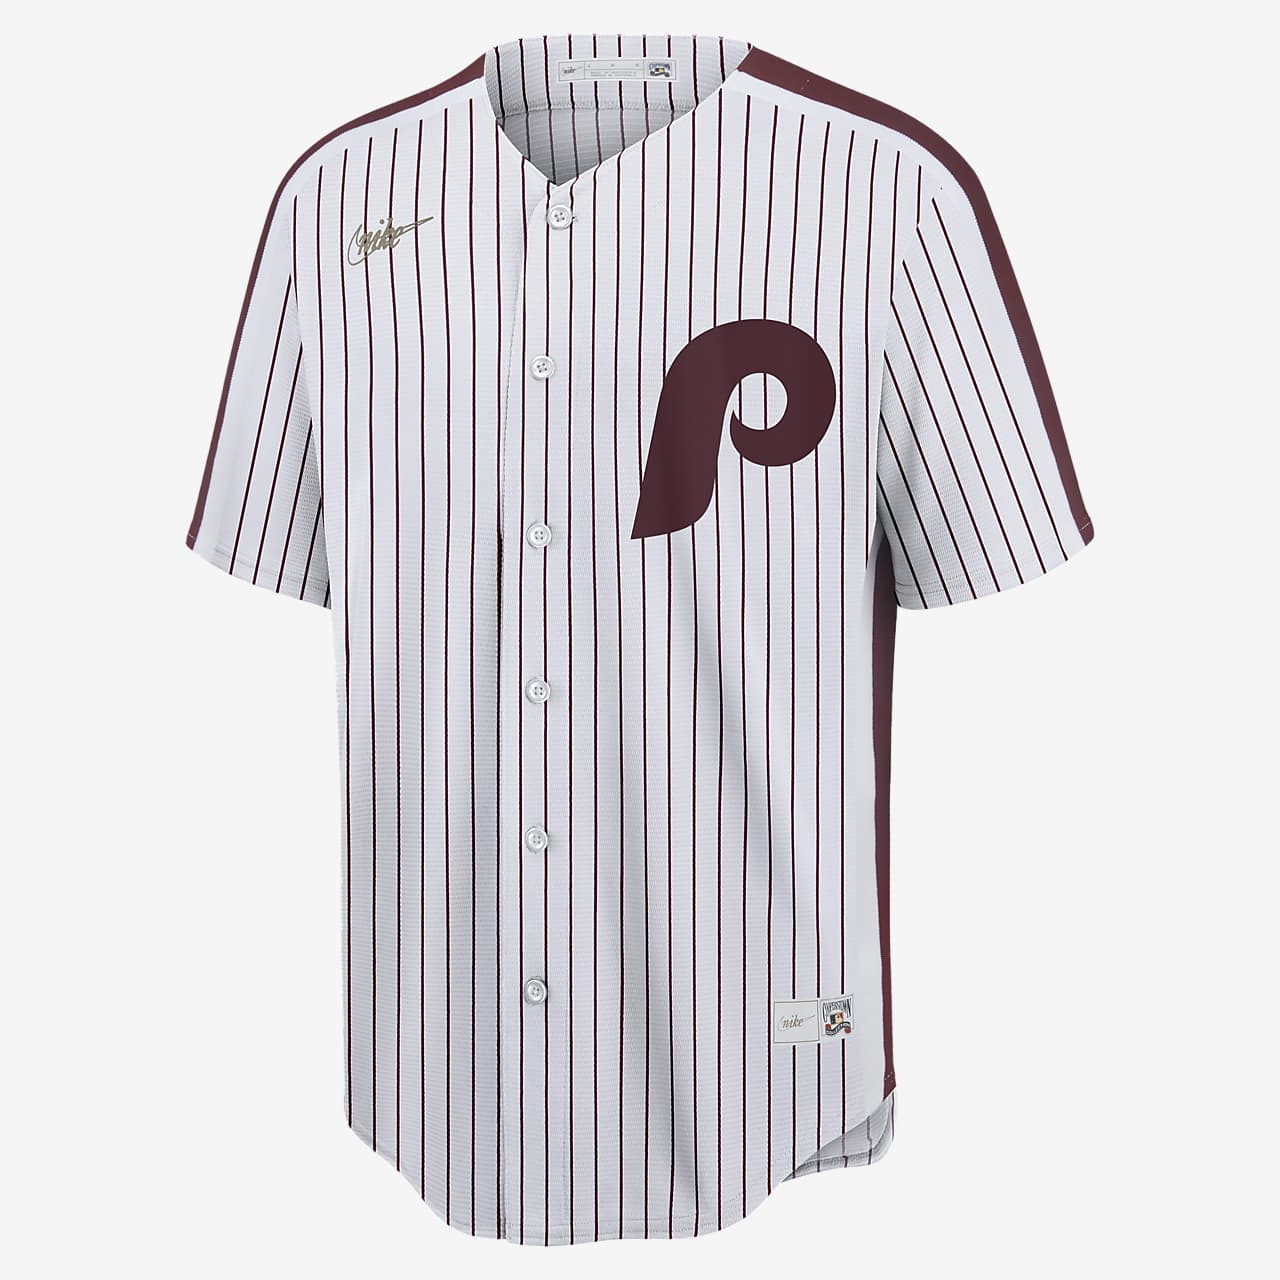 Vintage Russell Philadelphia Phillies MLB Jersey